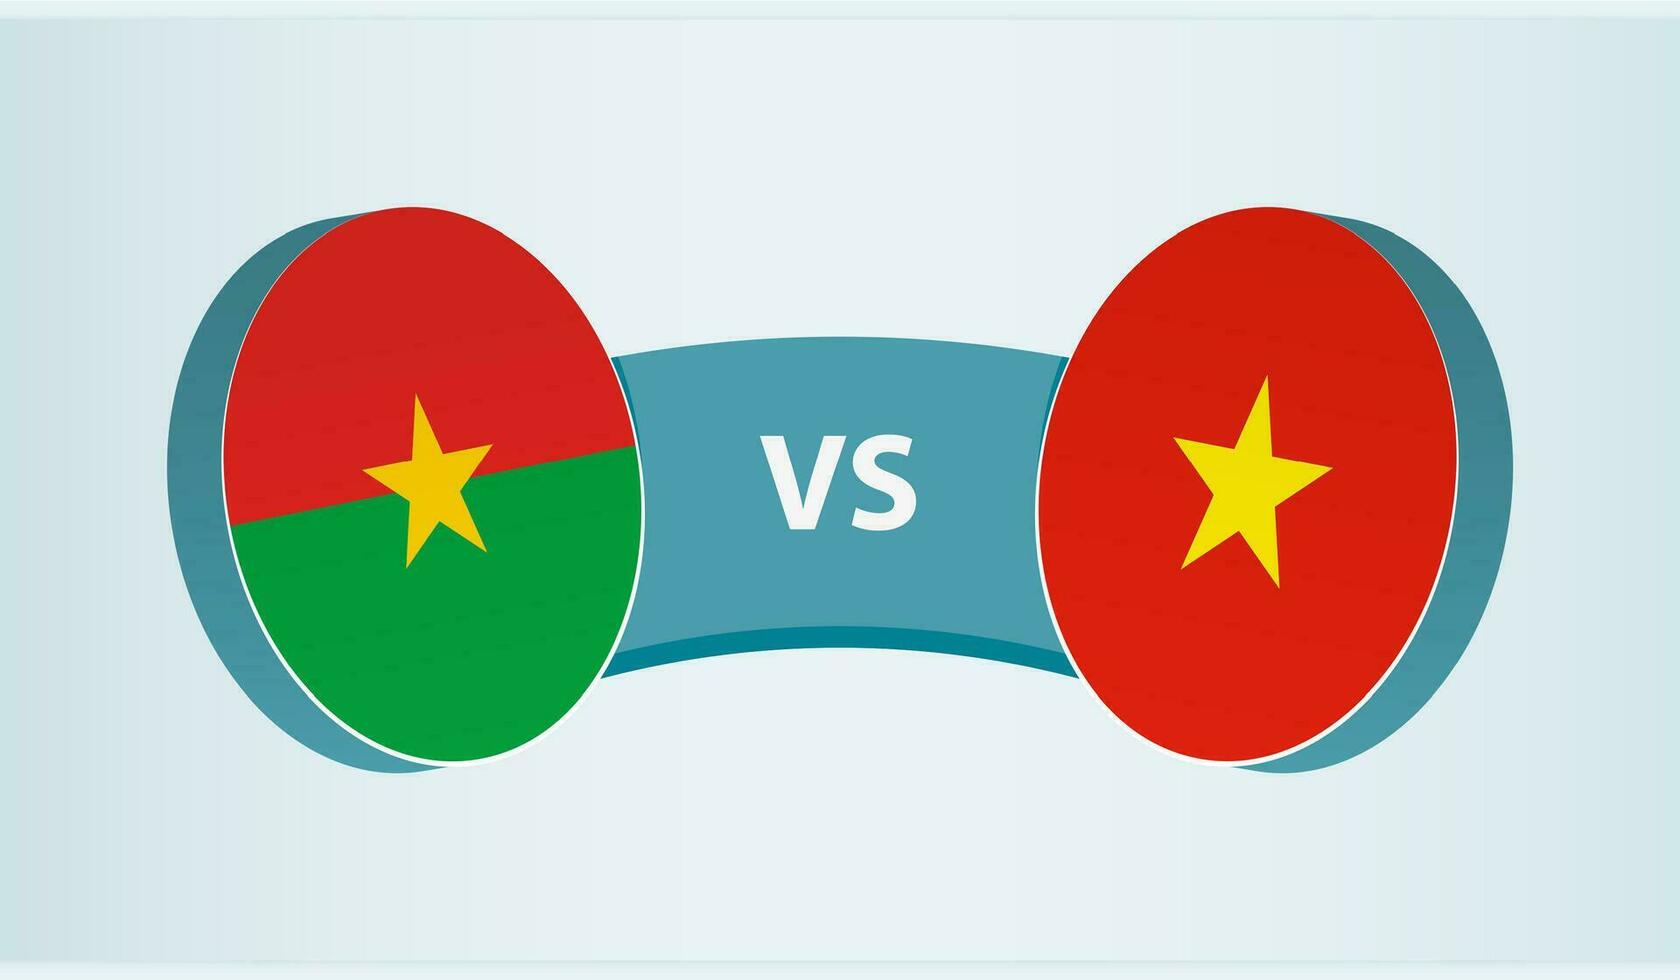 burkina faso versus Vietnam, equipo Deportes competencia concepto. vector